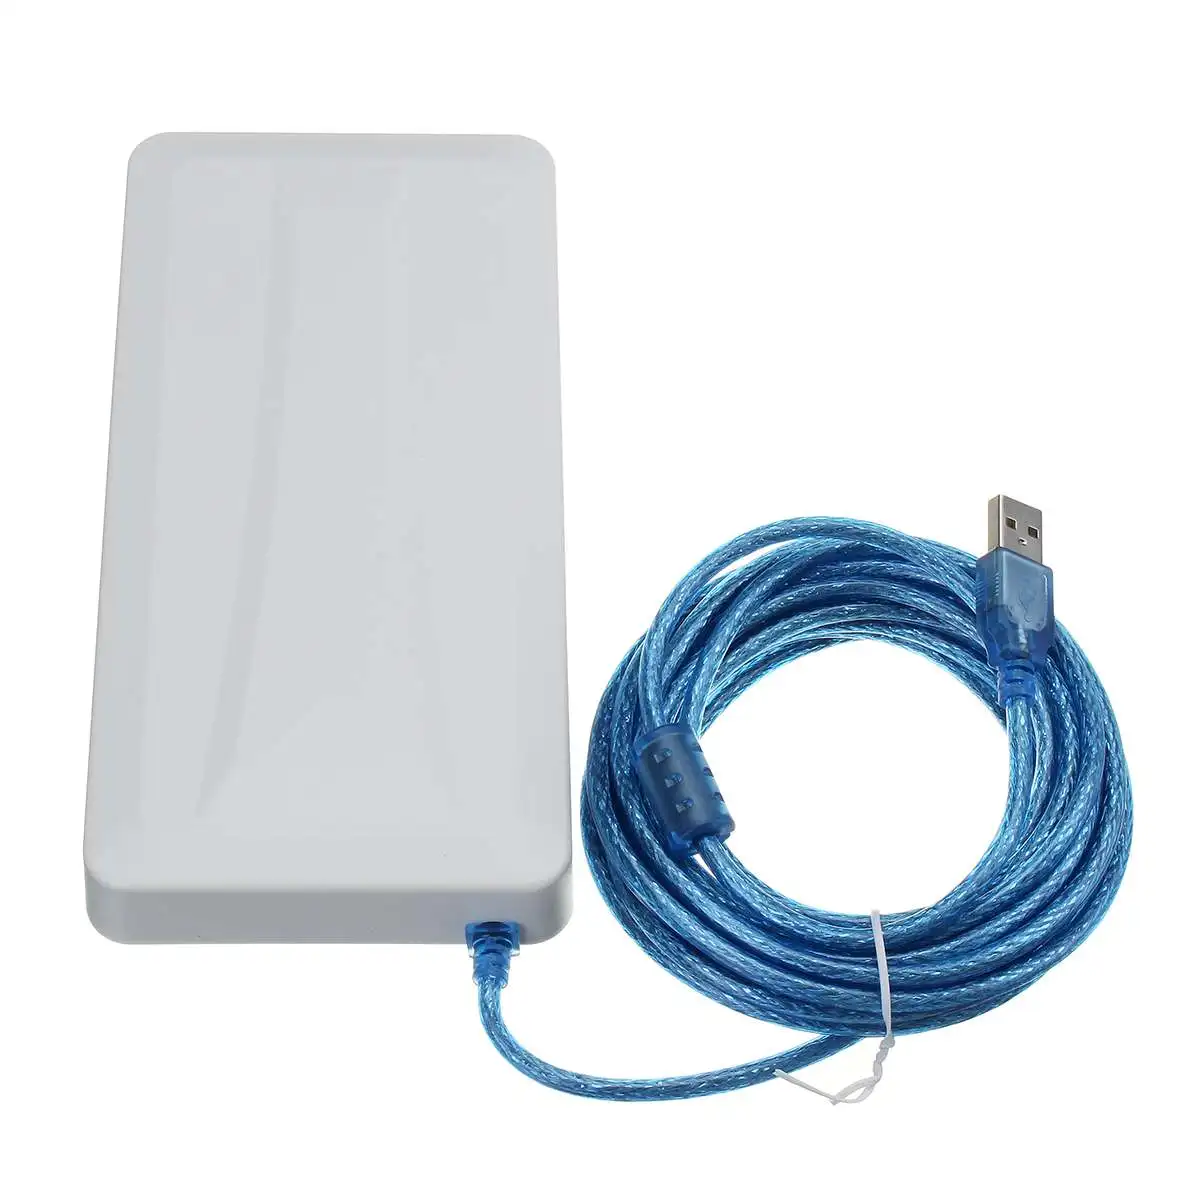 2,4 ГГц 150 Мбит/с USB беспроводной WiFi расширитель Wifi большой диапазон усилитель WiFi антенный усилитель для сети дома и офиса